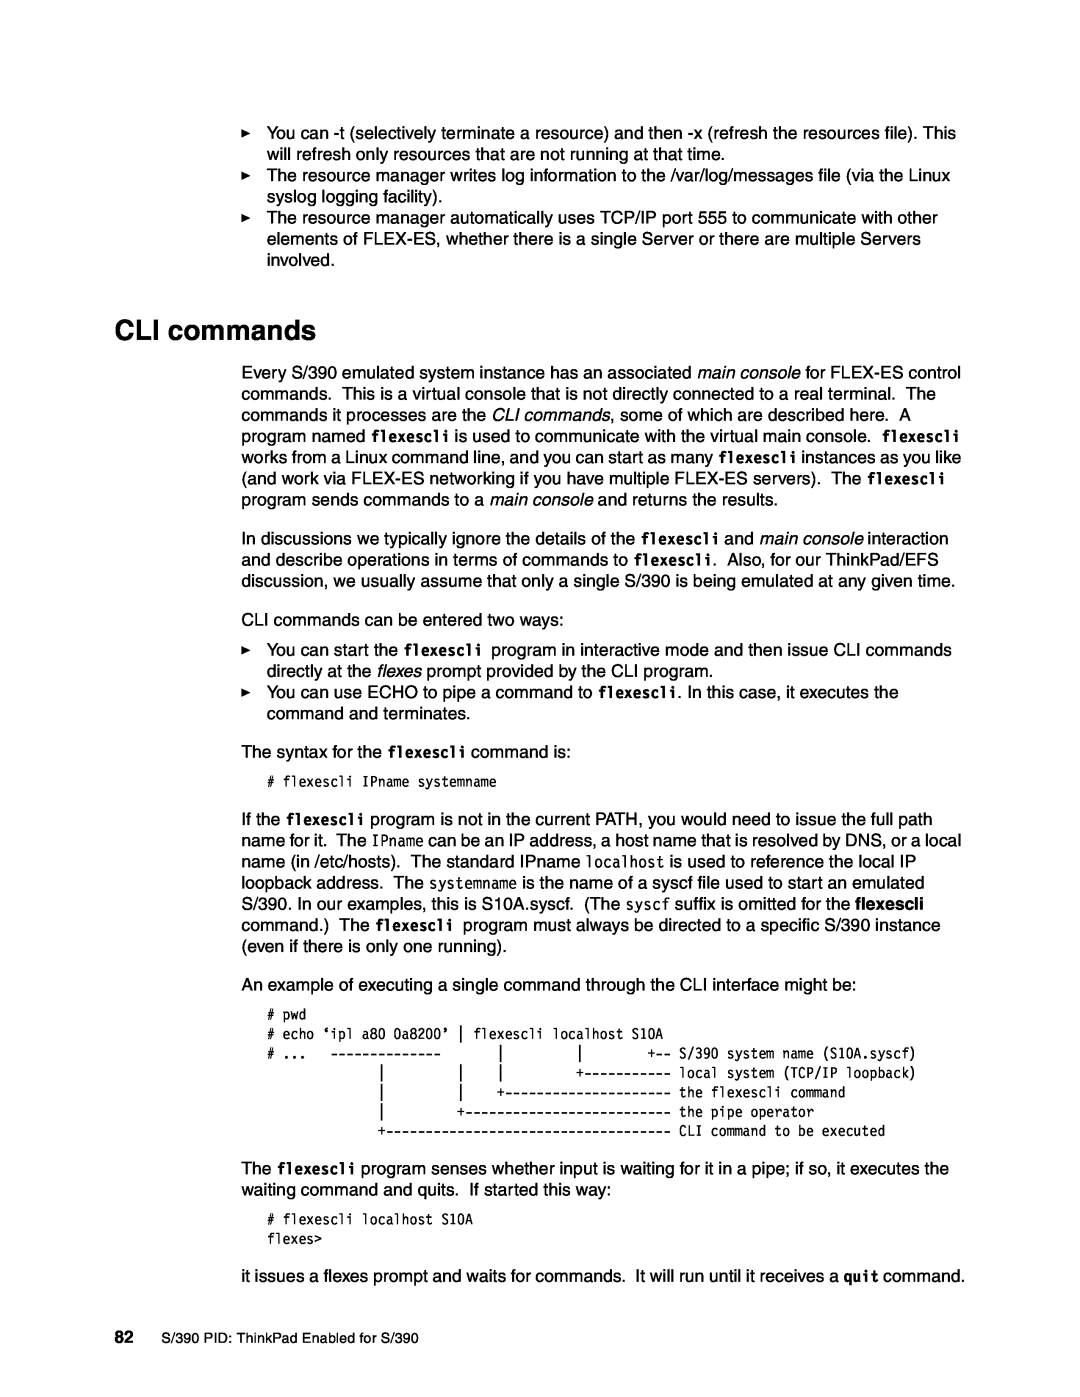 IBM s/390 manual CLI commands 